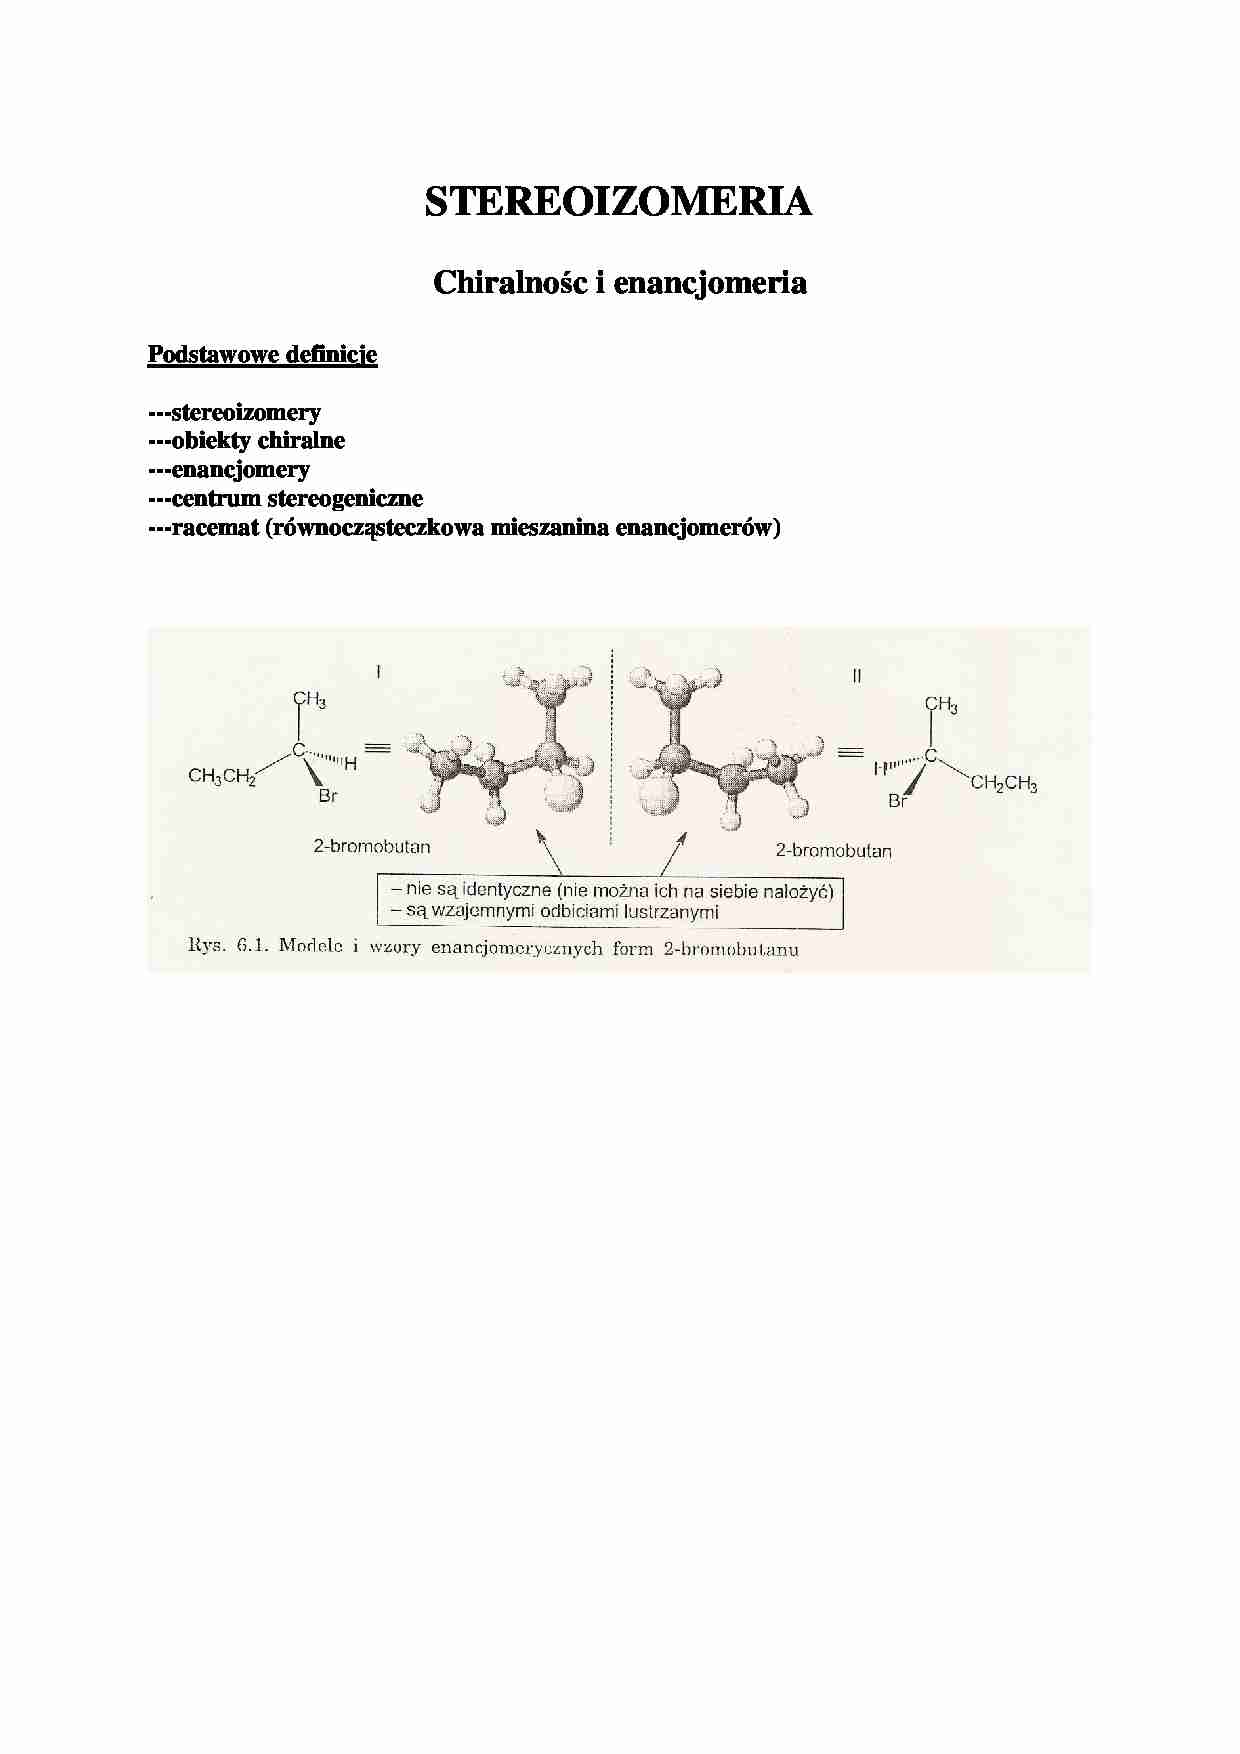 Chiralność i enancjometria - wykład - strona 1